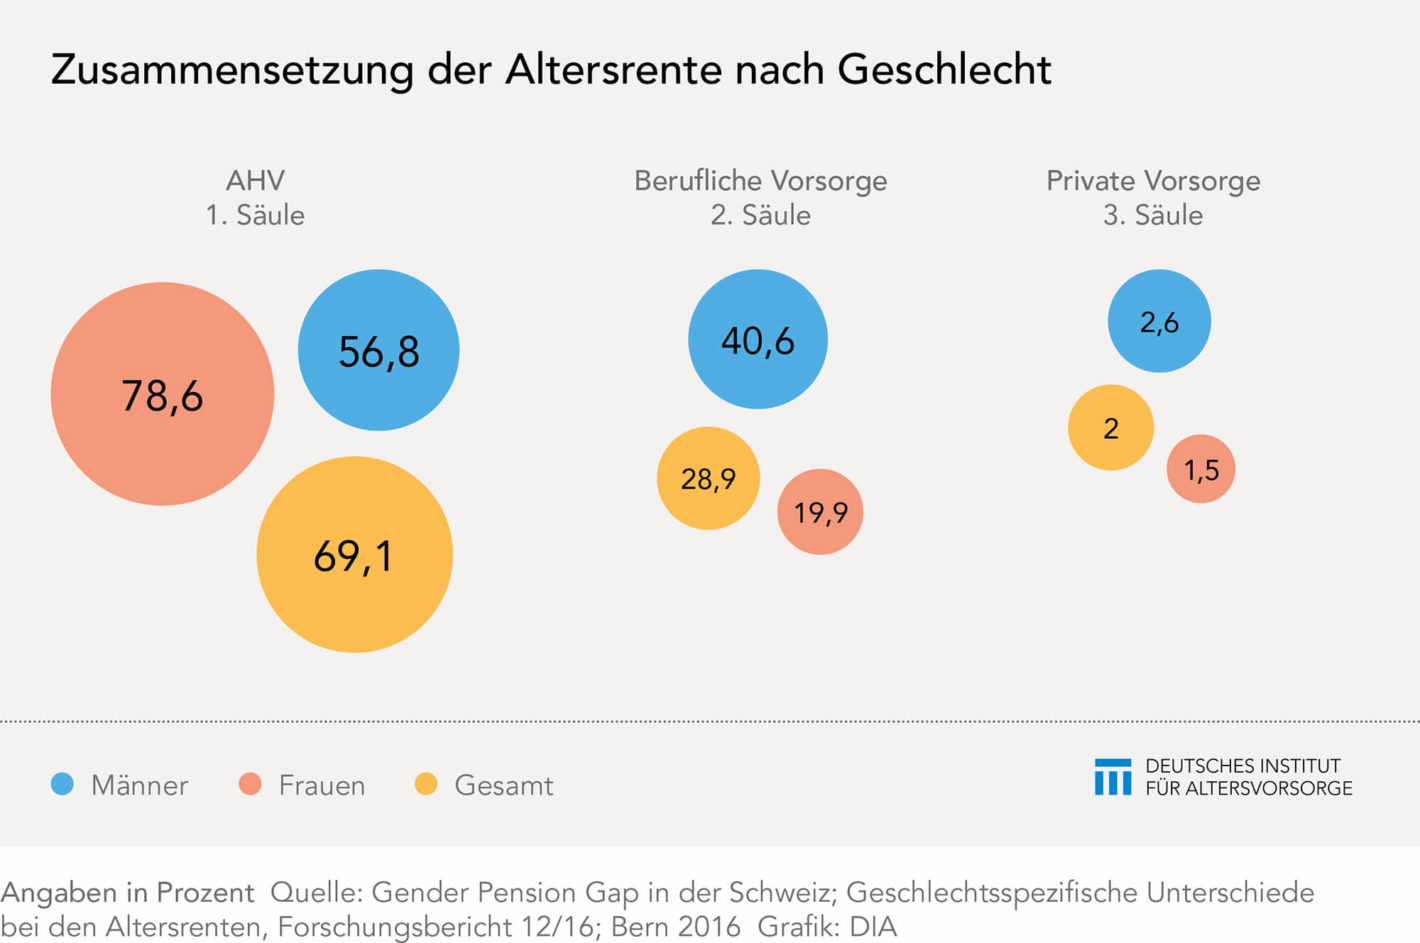 Der Gender Pension Gap in der Schweiz